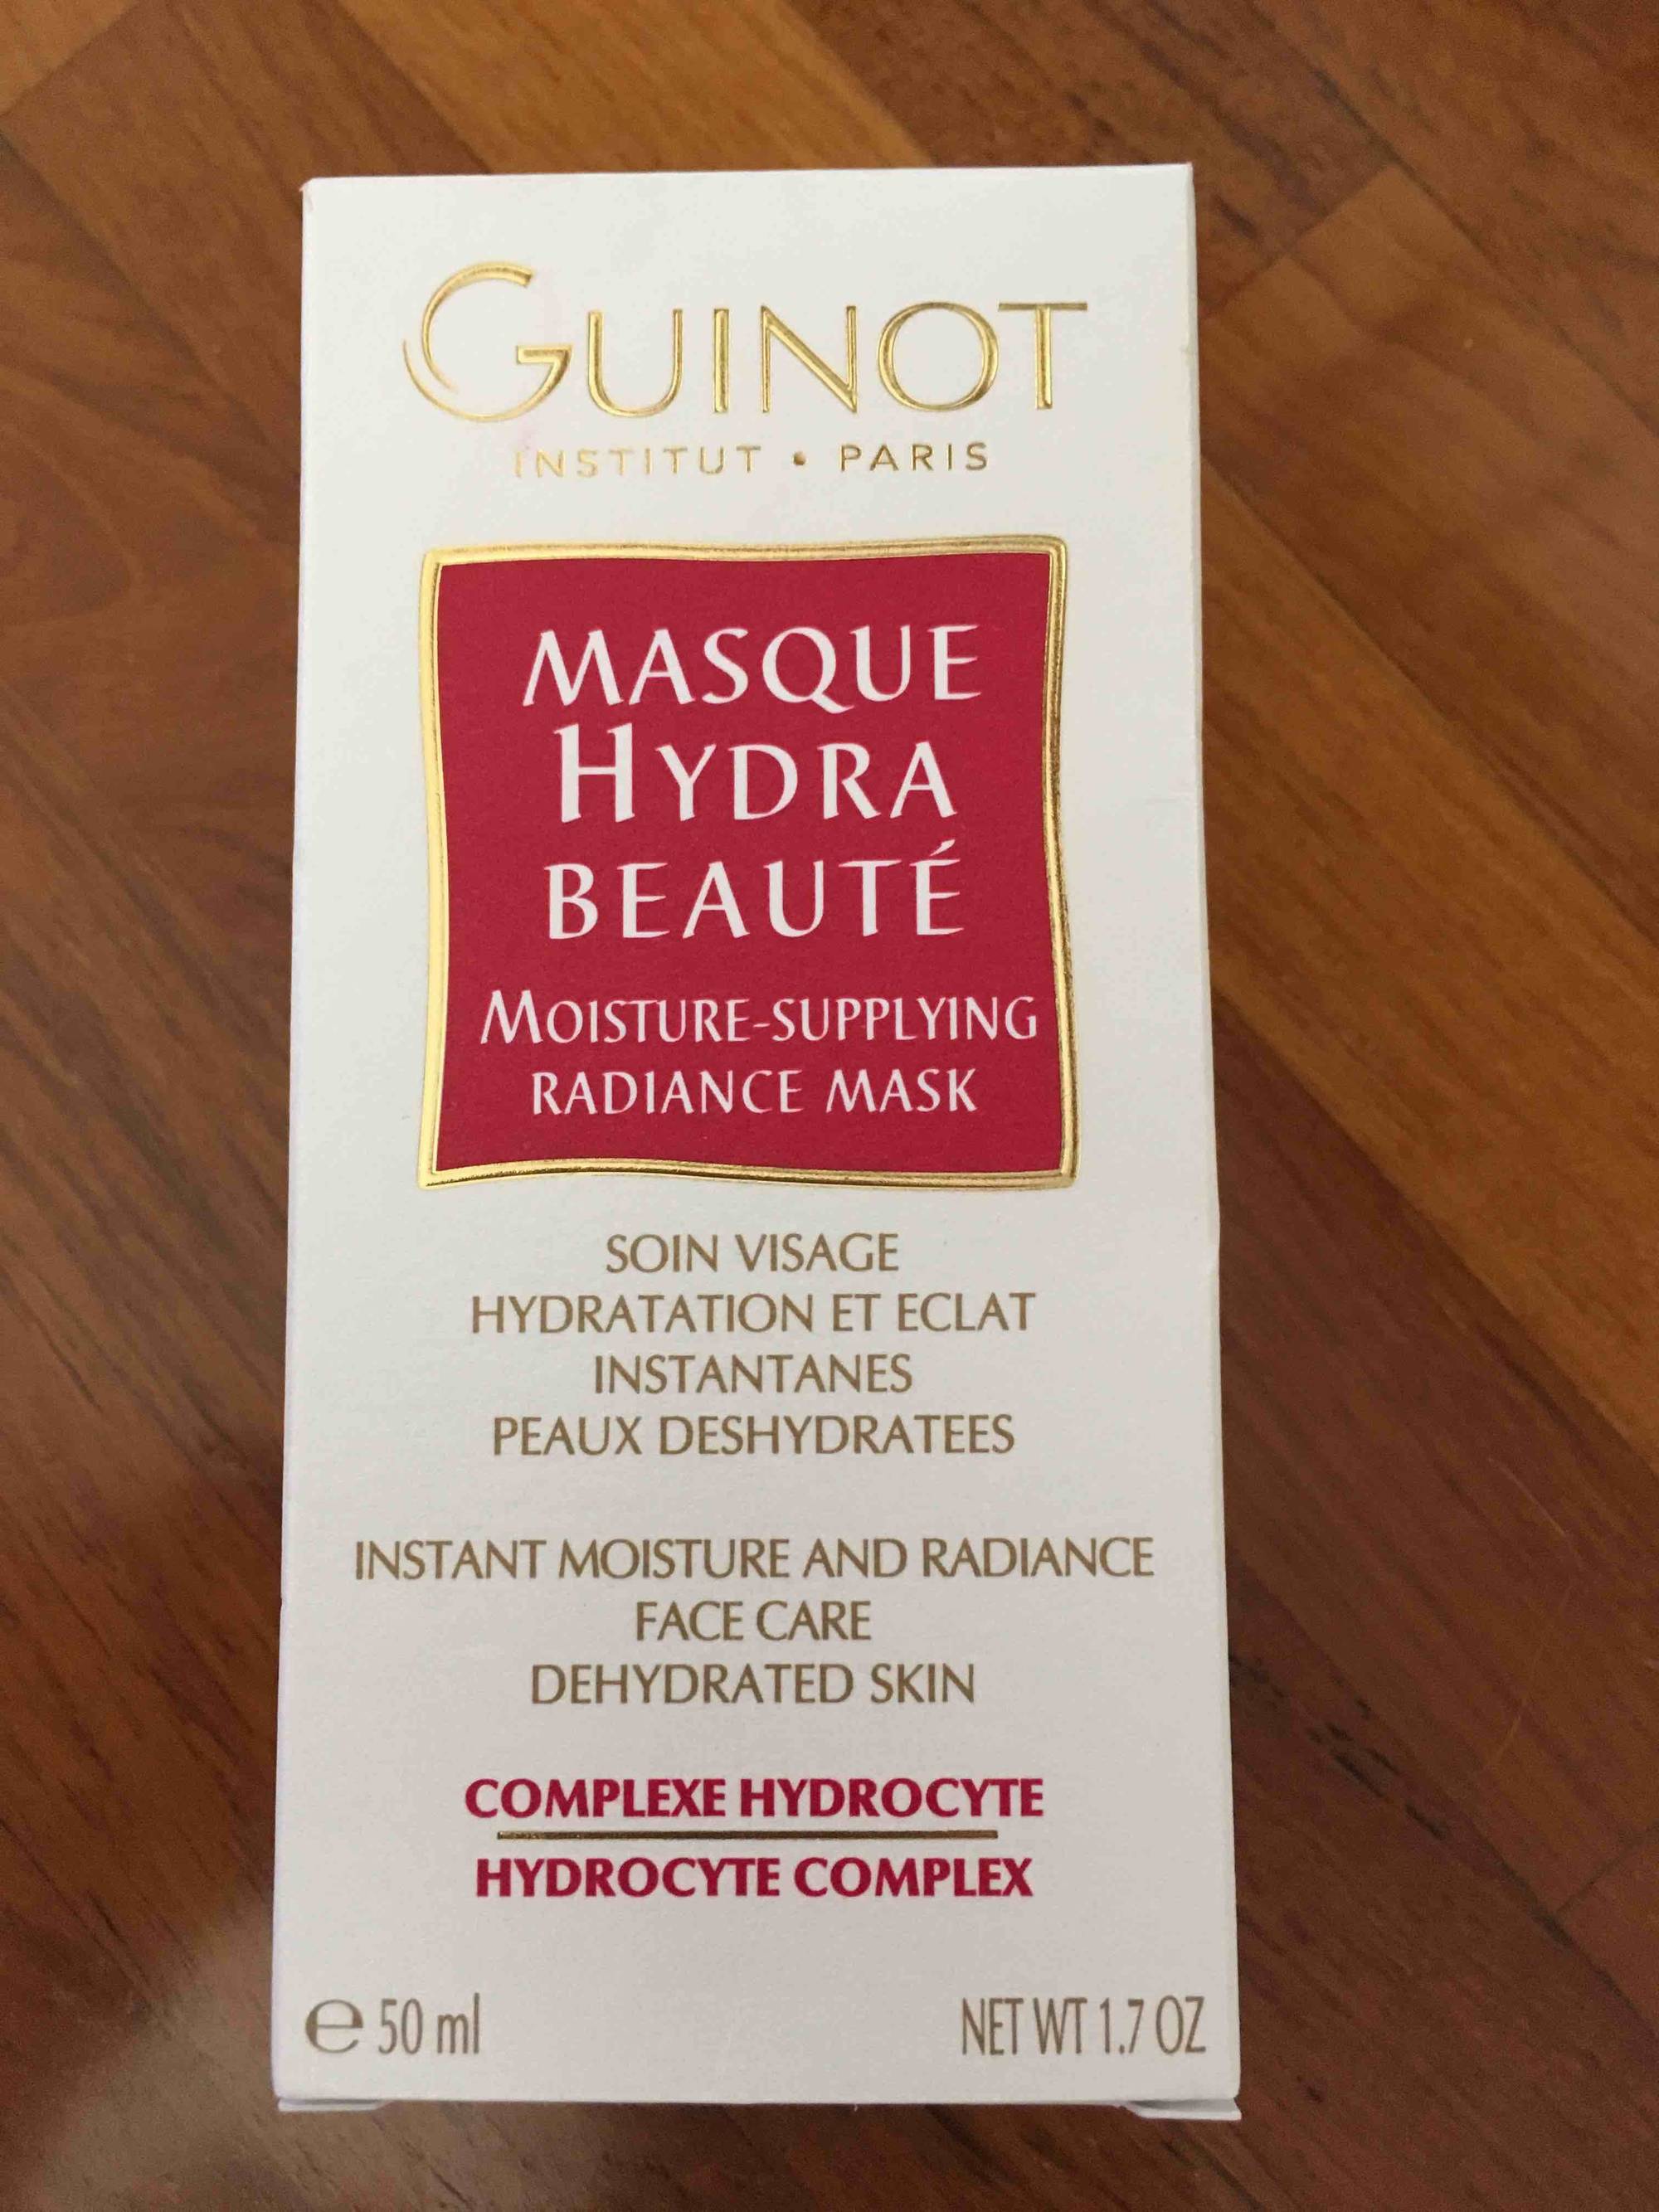 GUINOT - Masque hydra beauté